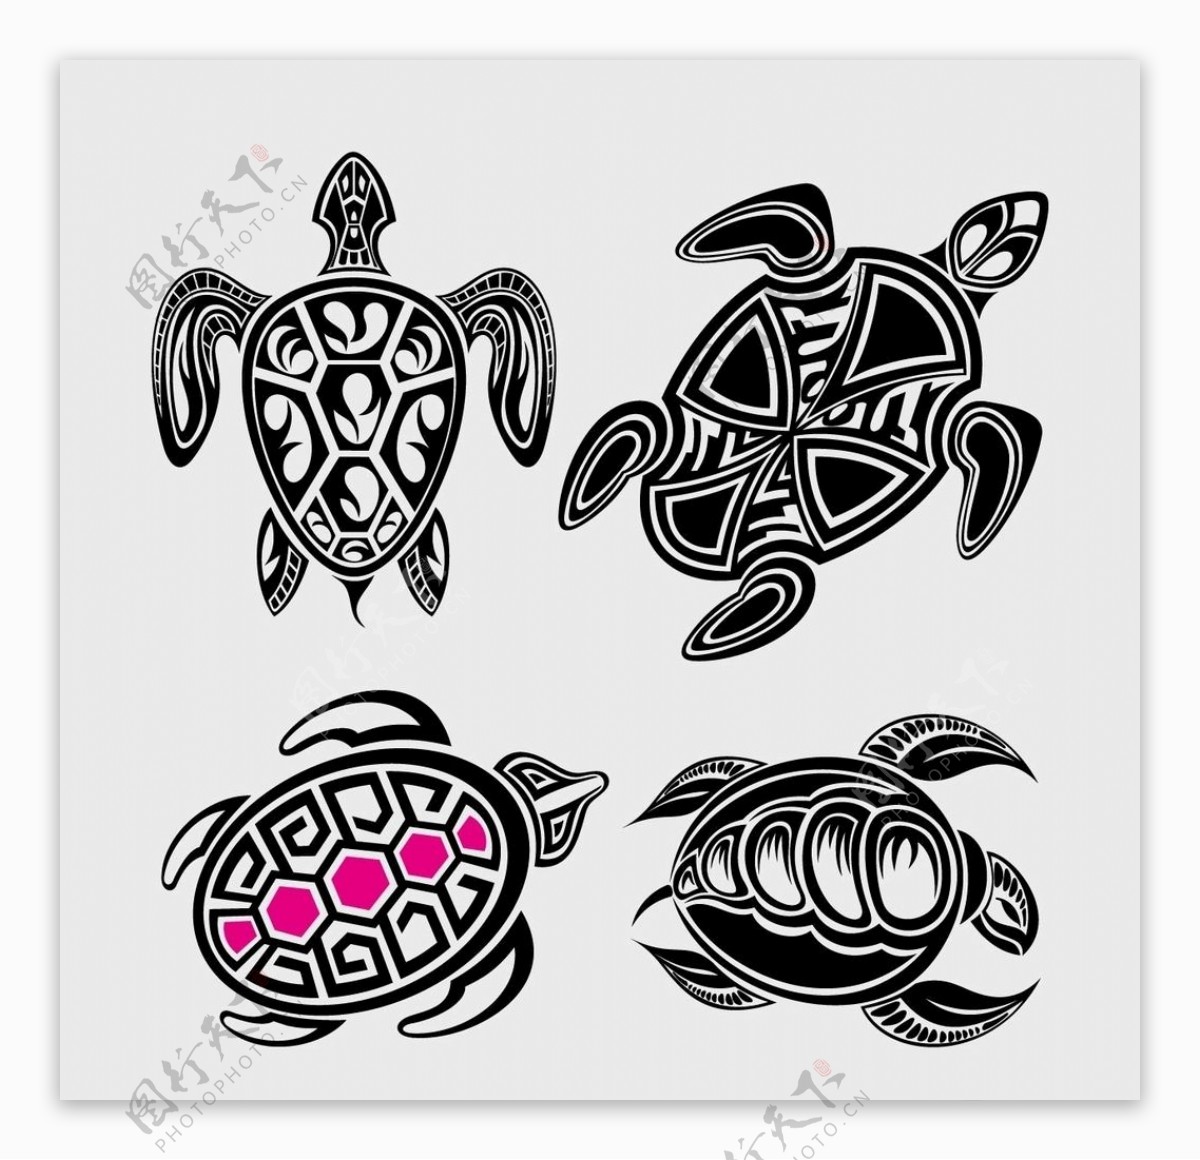 抽象海龟纹身图案